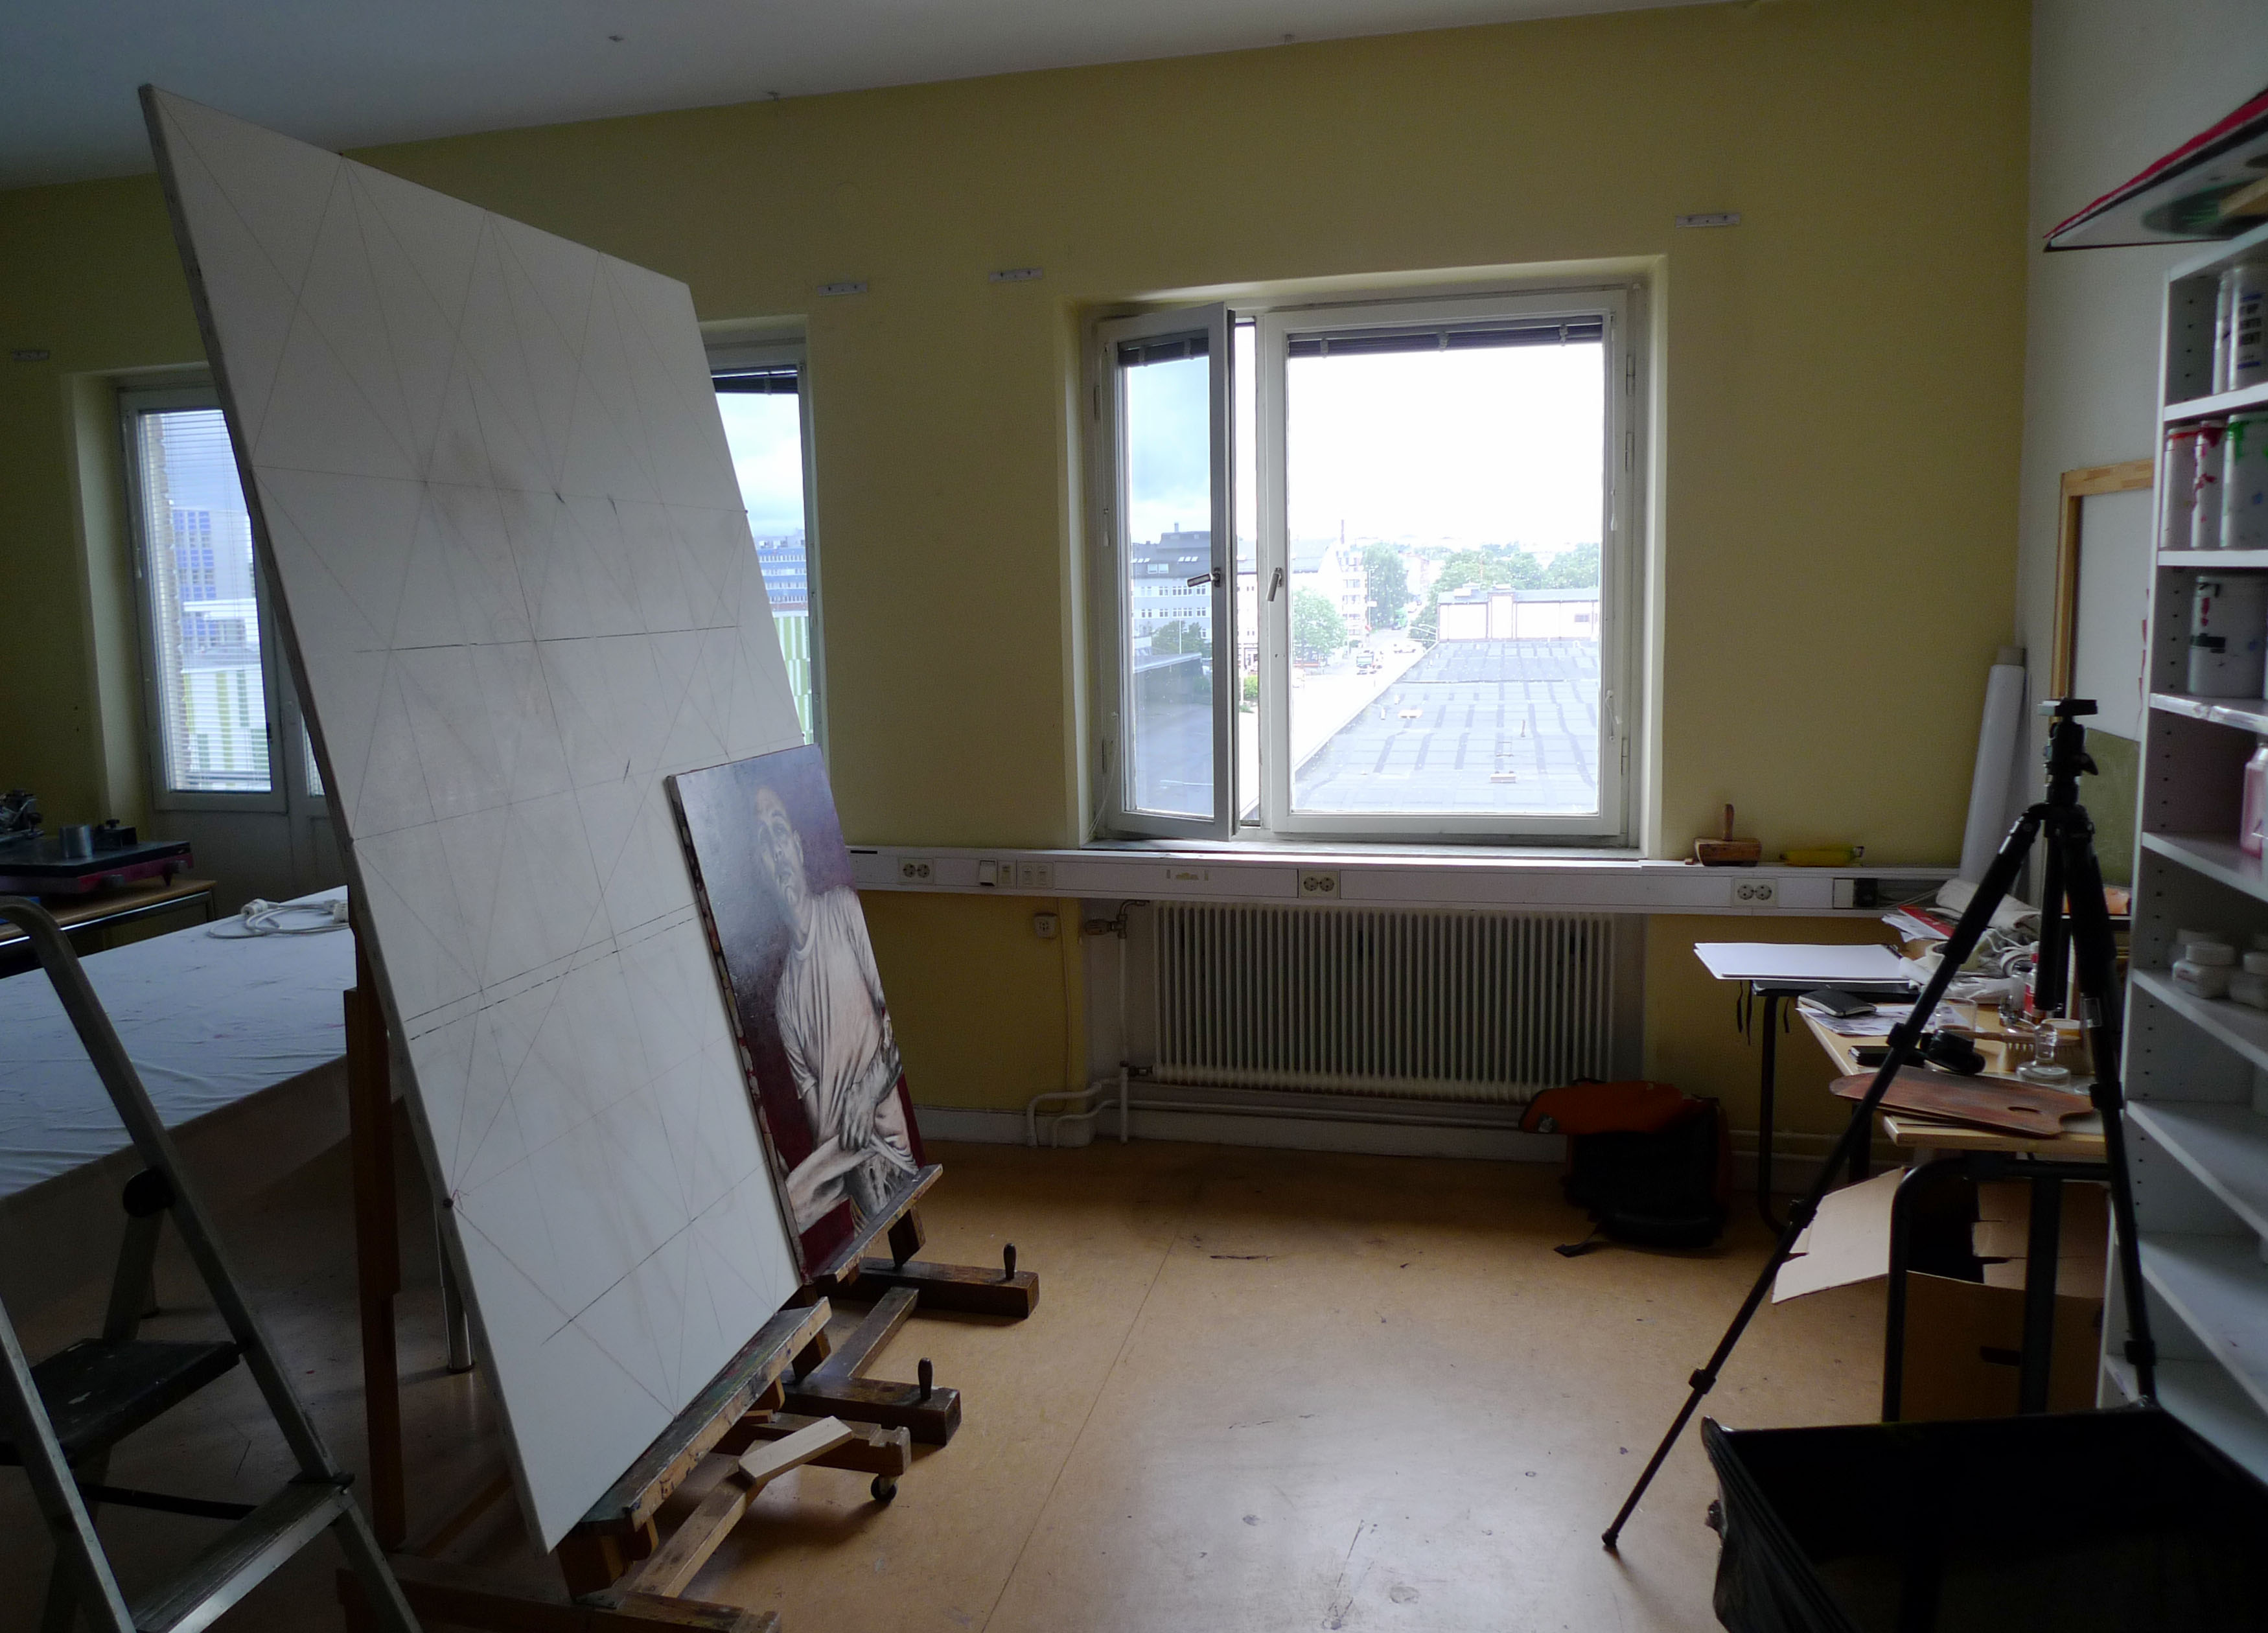 Temporary atelier in Västberga